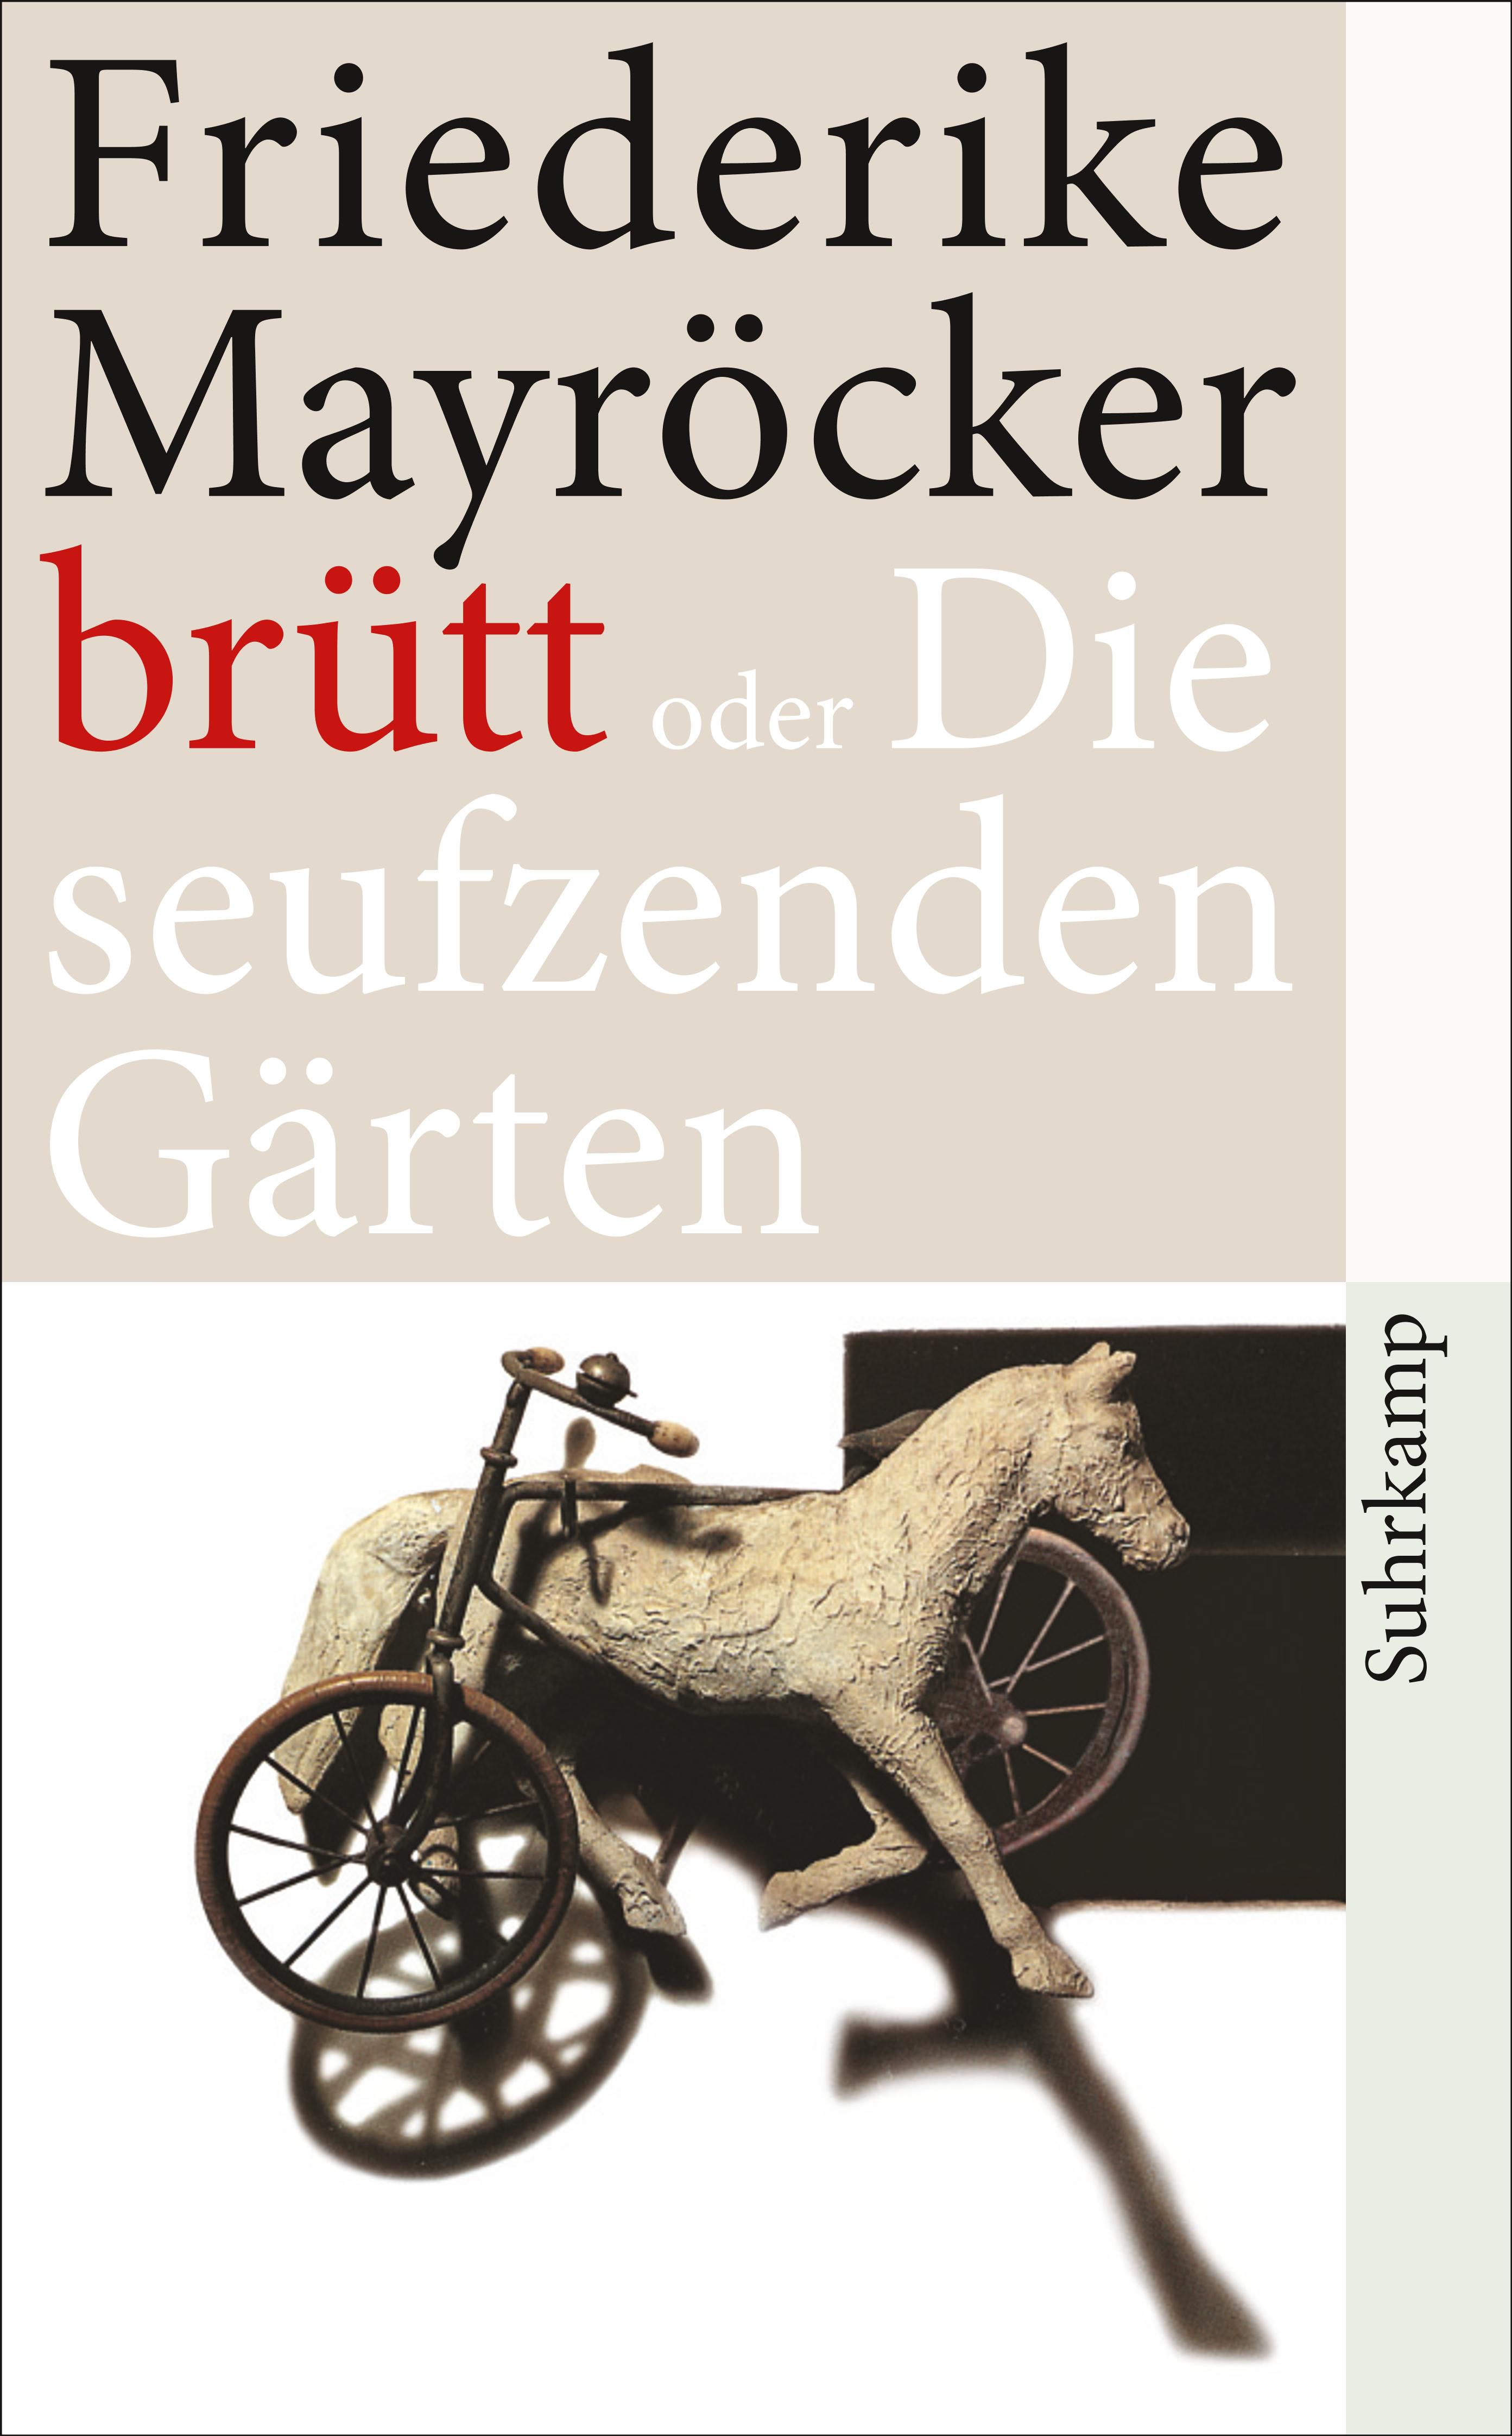 Friederike Mayröcker: just sitting around here GRUESOMELY now (ich sitze  nur GRAUSAM da, Suhrkamp Verlag)